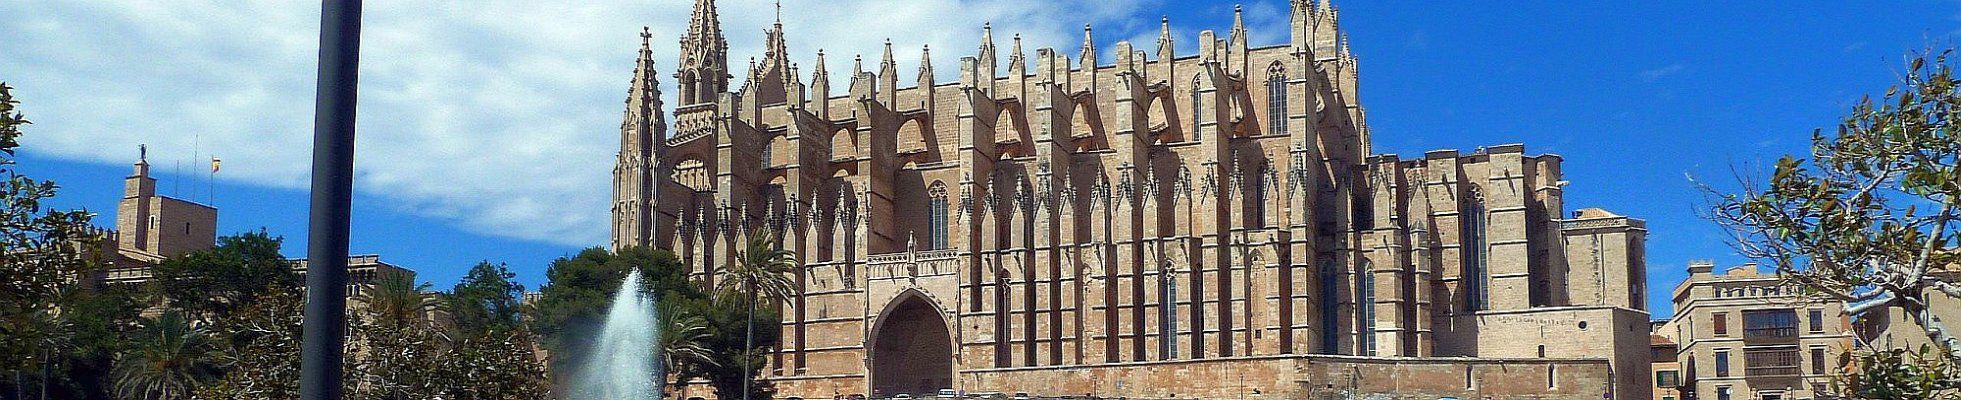 Palma - Kathedrale